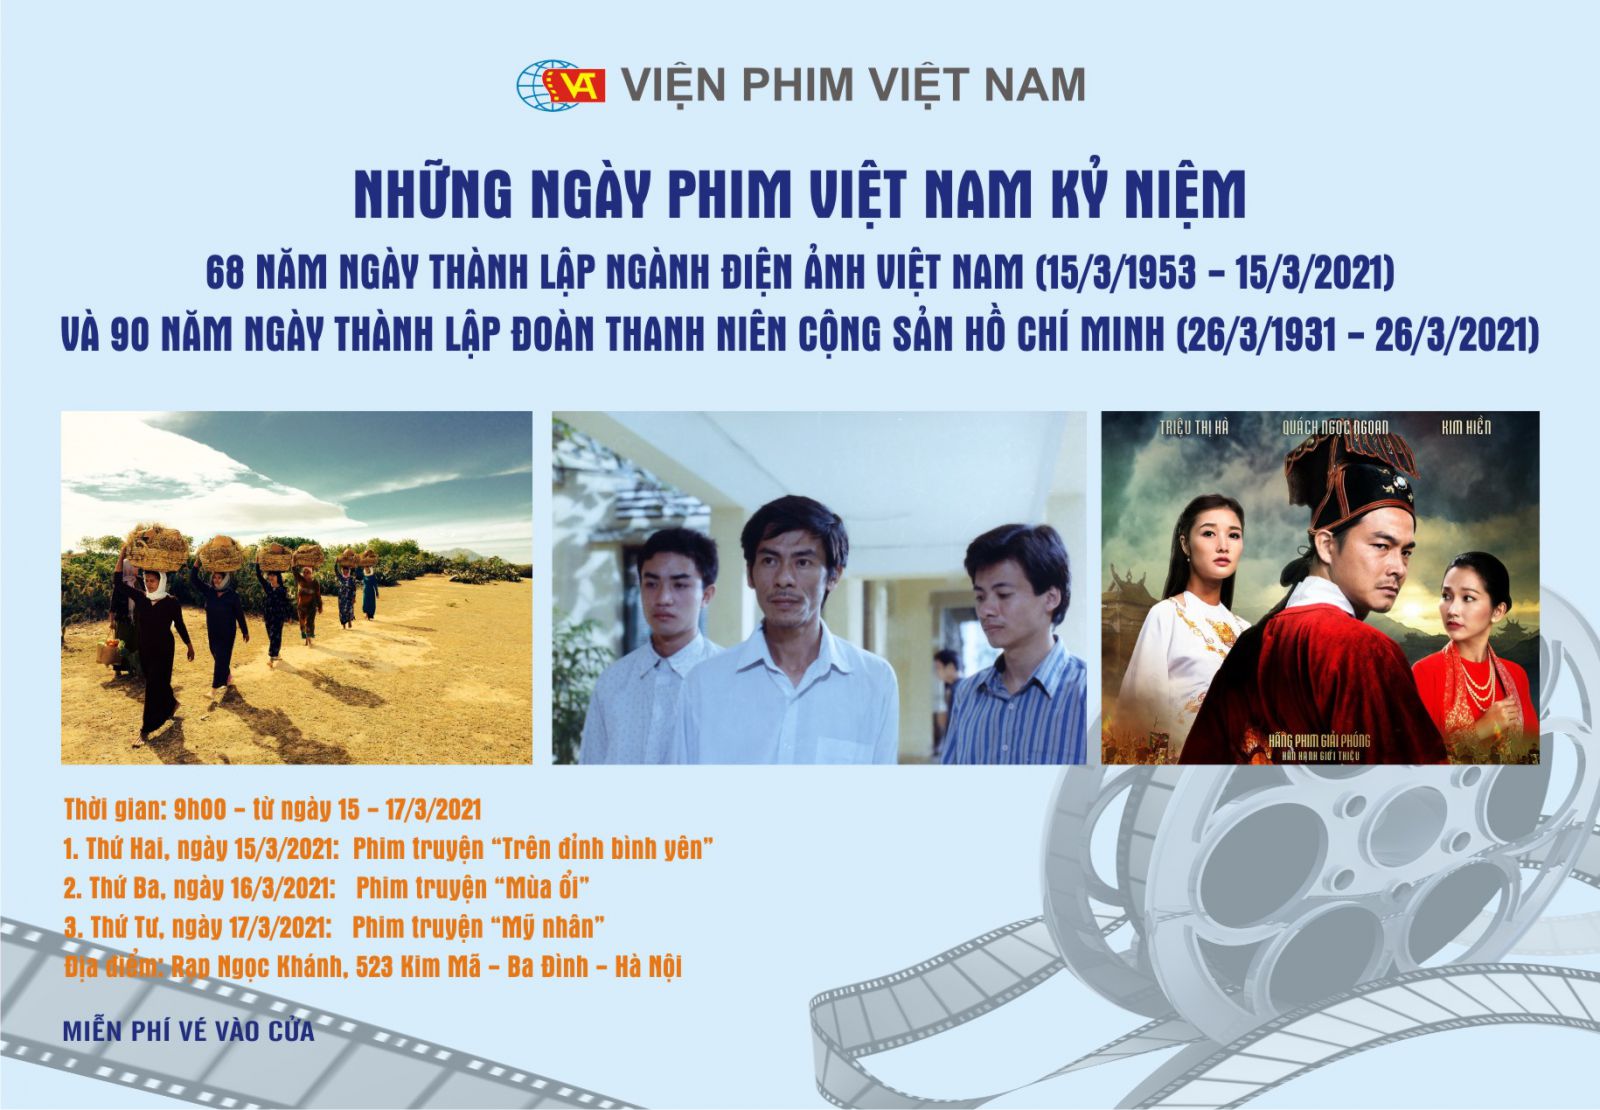 Chương trình chiếu phim điện ảnh: Những ngày phim Việt Nam kỷ niệm 46 năm ngày Giải phóng miền Nam, thống nhất đất nước (30/4/1975 – 30/4/2021)